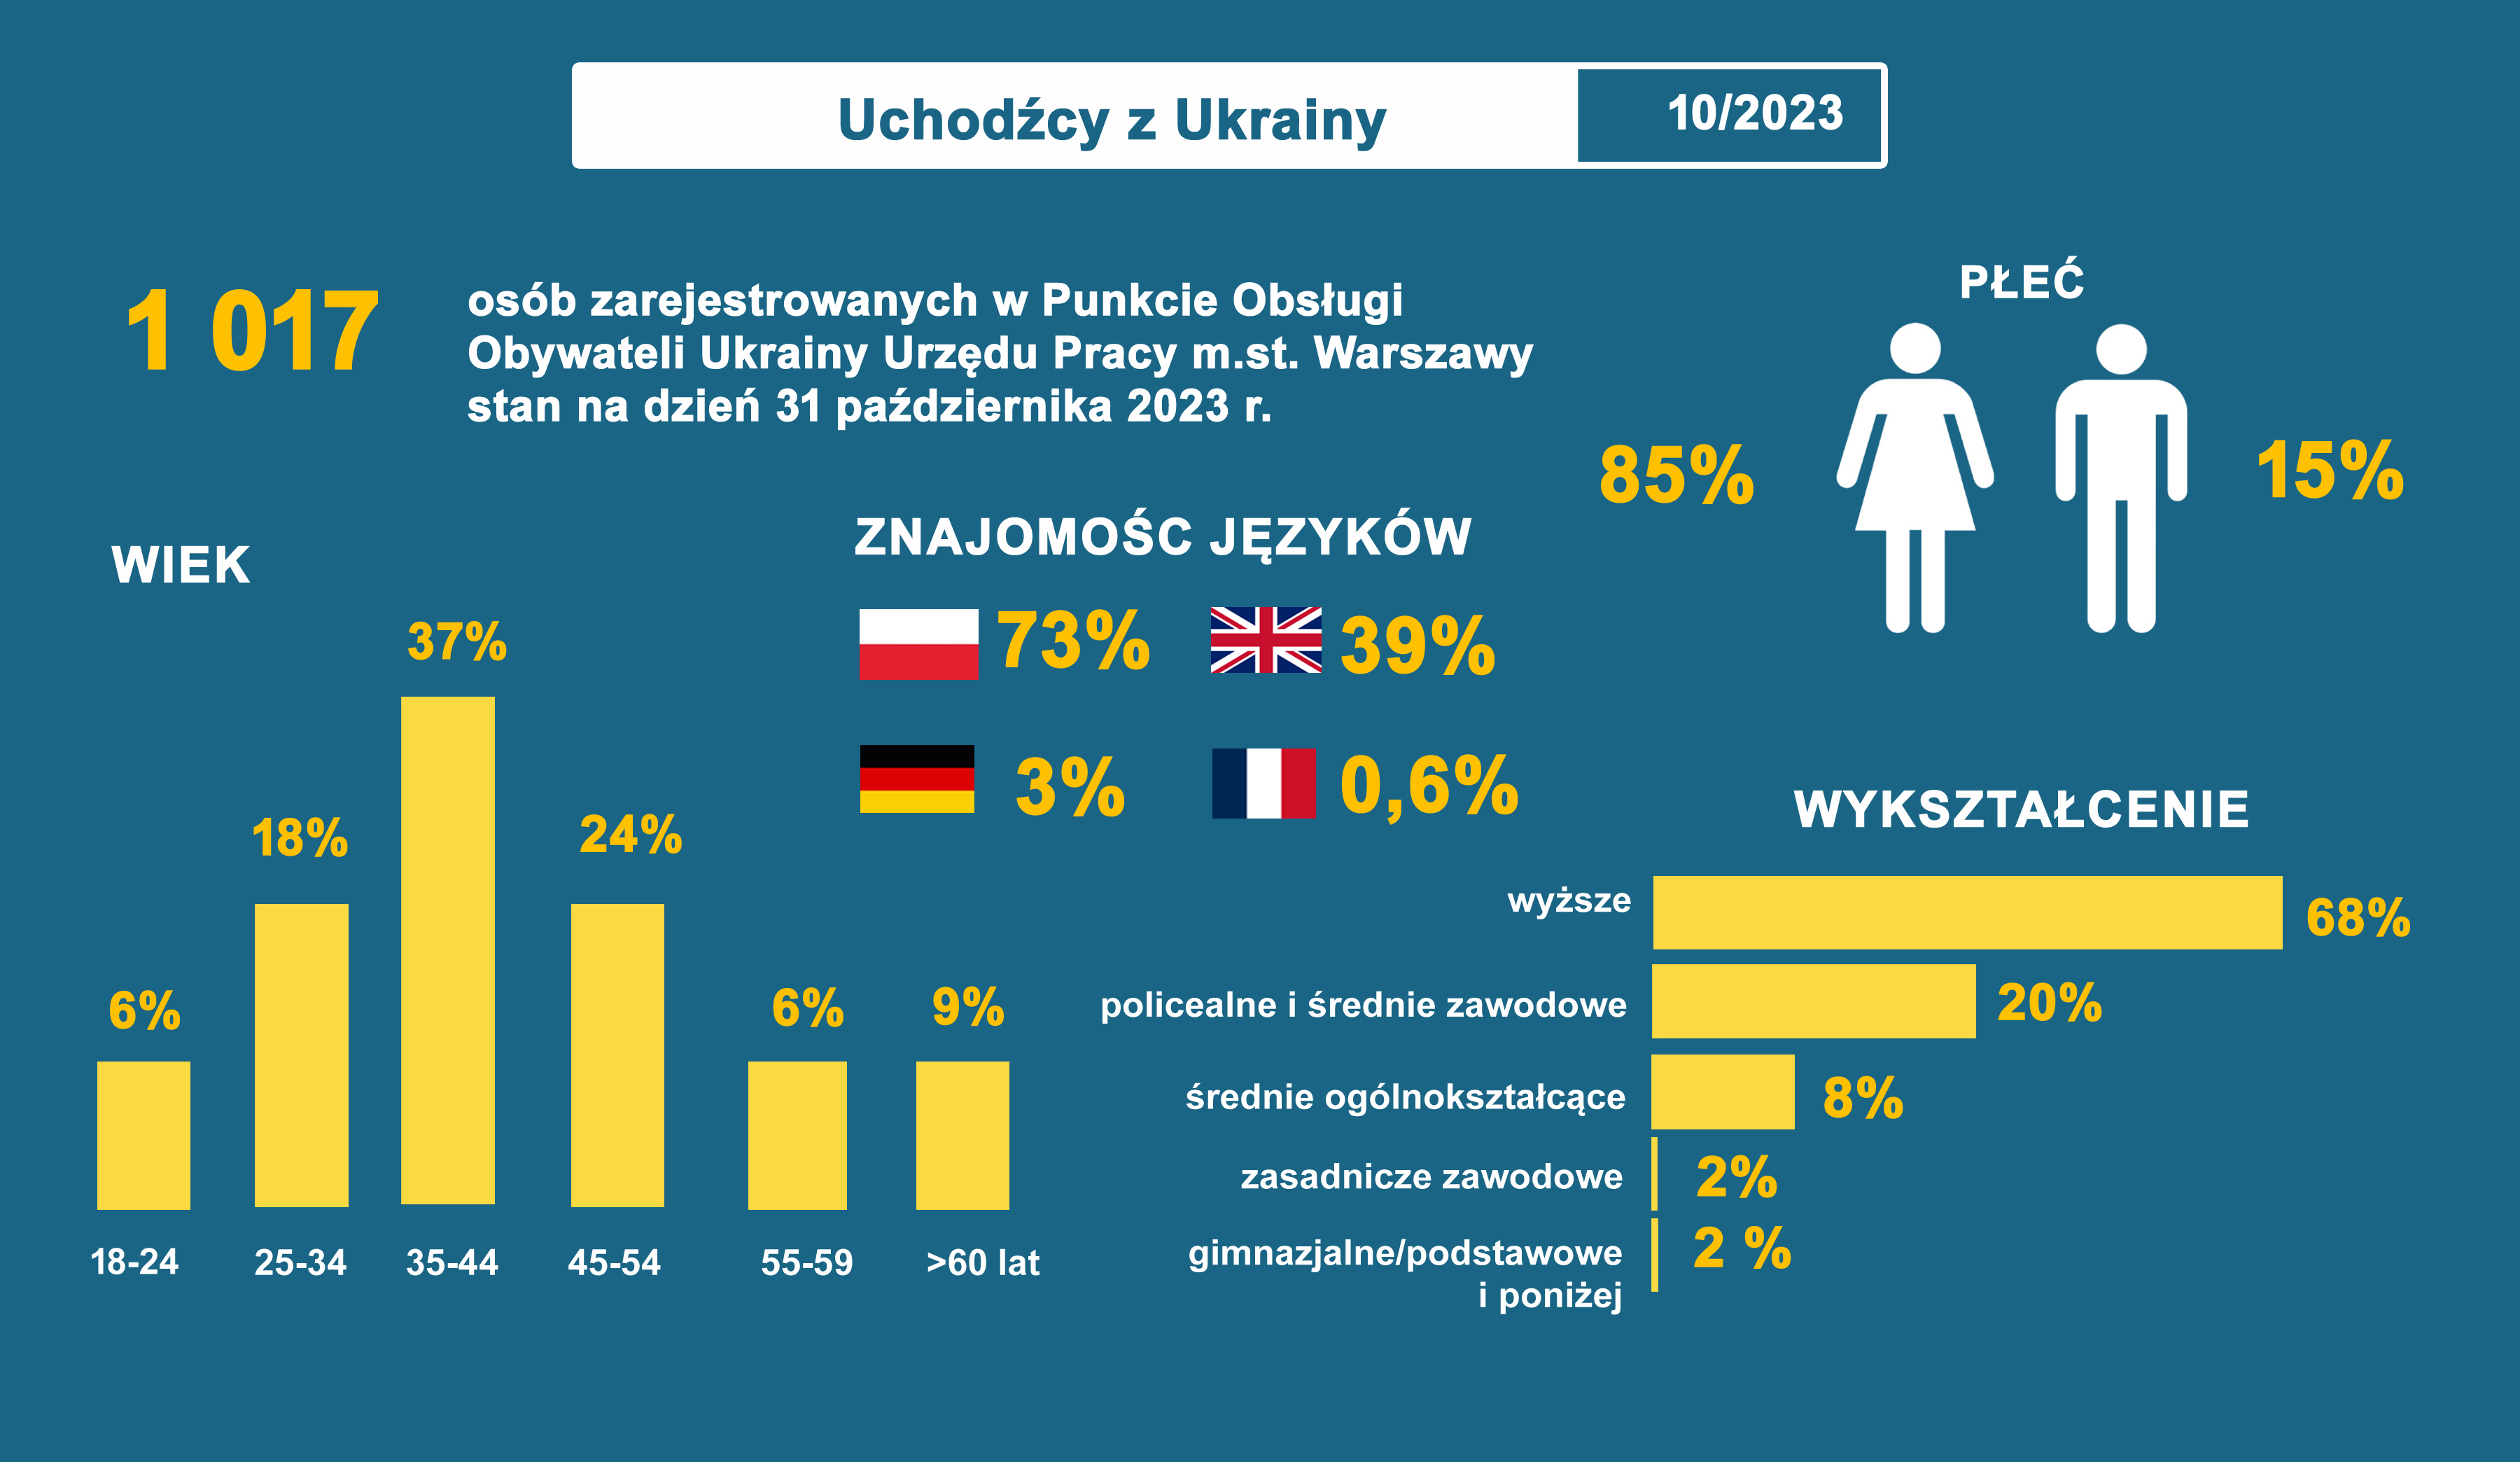 uchodźcy z Ukrainy październik 2023 opis pod obrazkiem